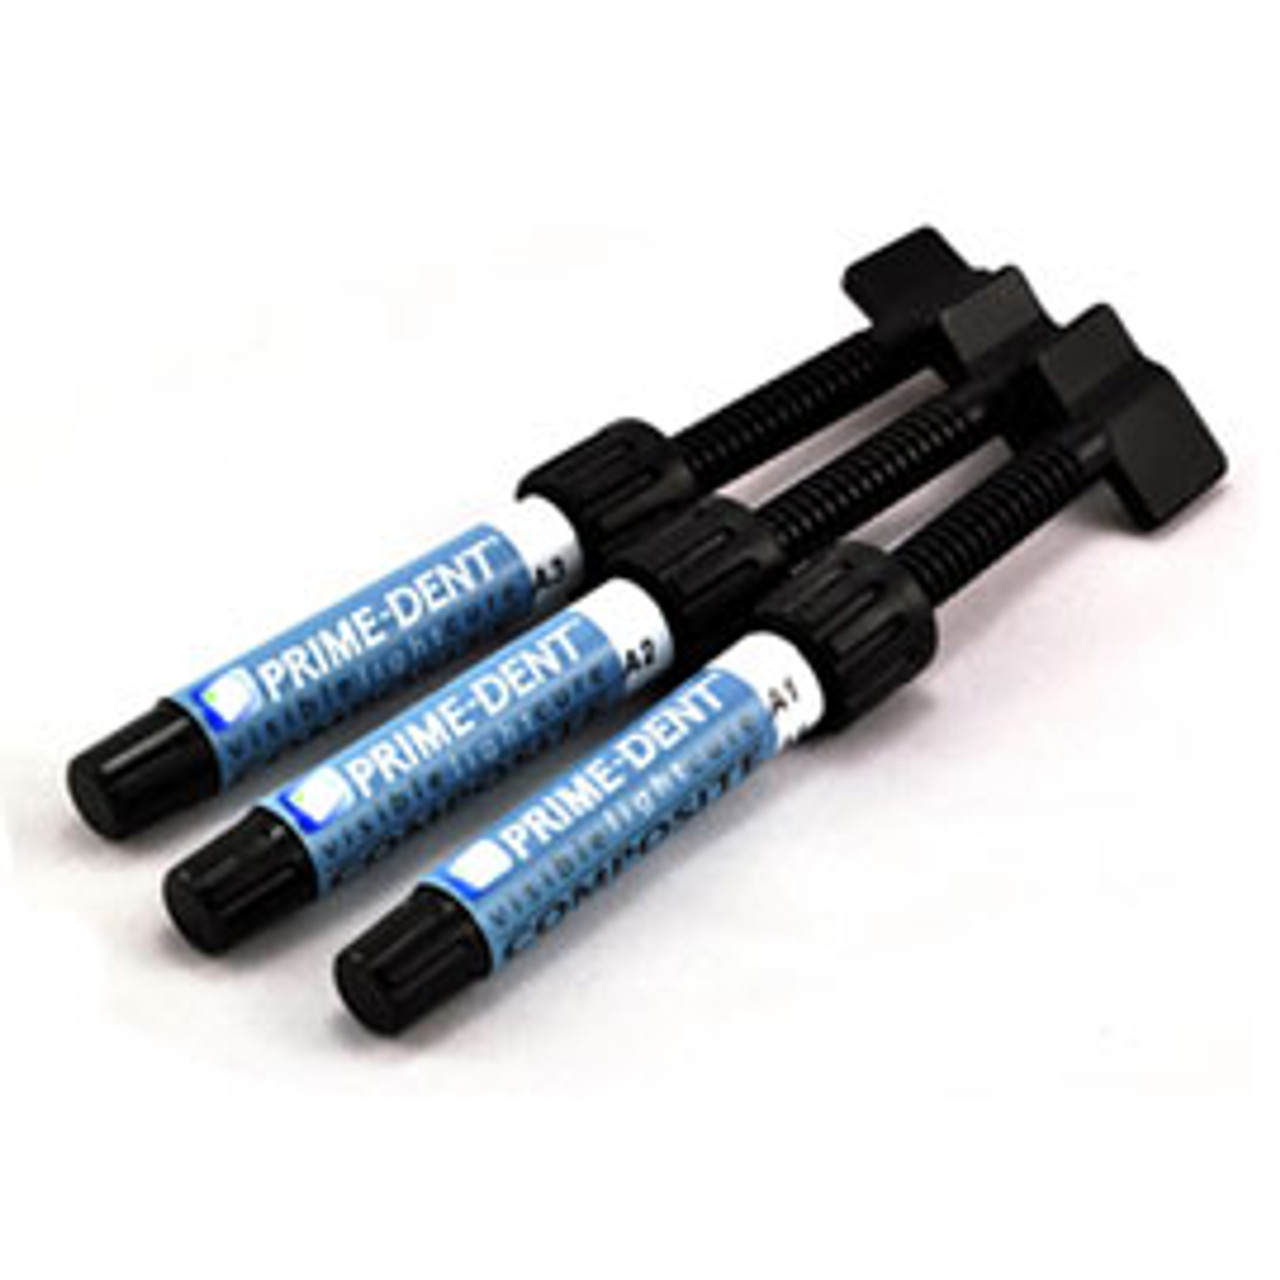 Prime-Dent VLC Hybrid Composite 4.5 g Syringe Refill [D3]